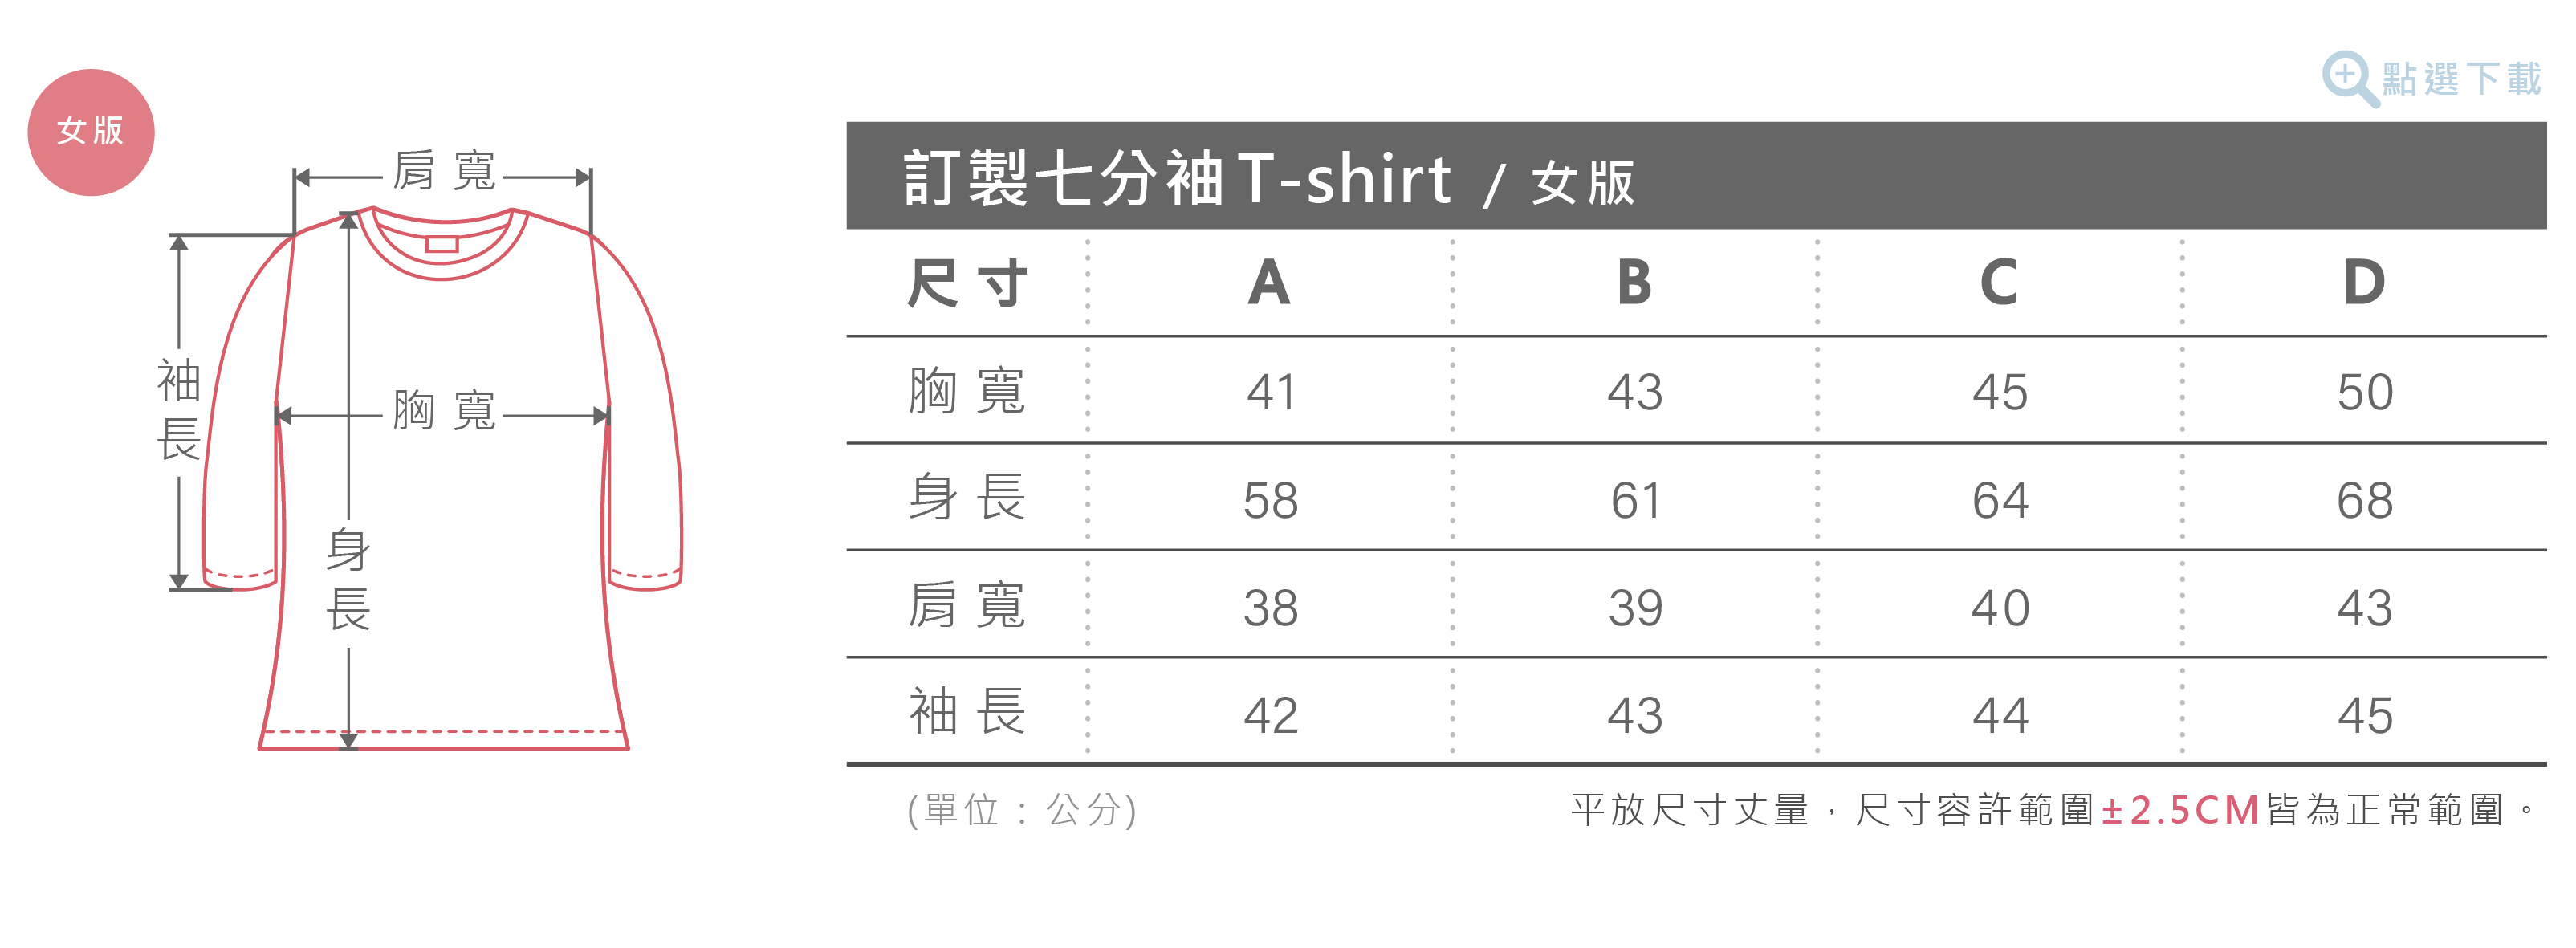 女版七分袖T-shirt尺寸表